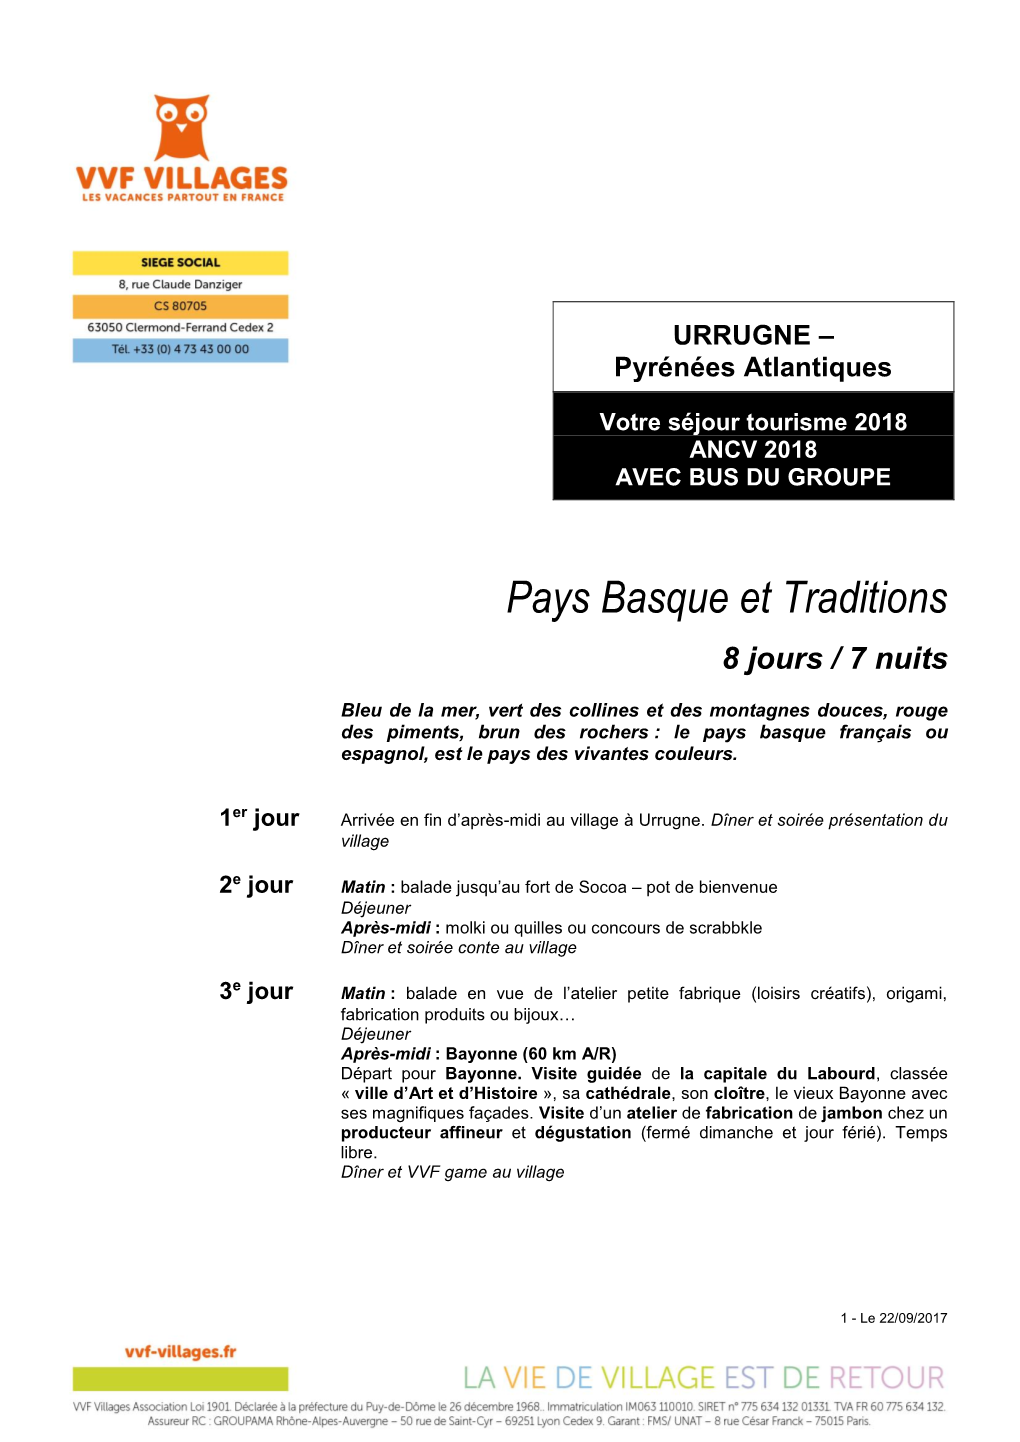 URRUGNE – Pyrénées Atlantiques